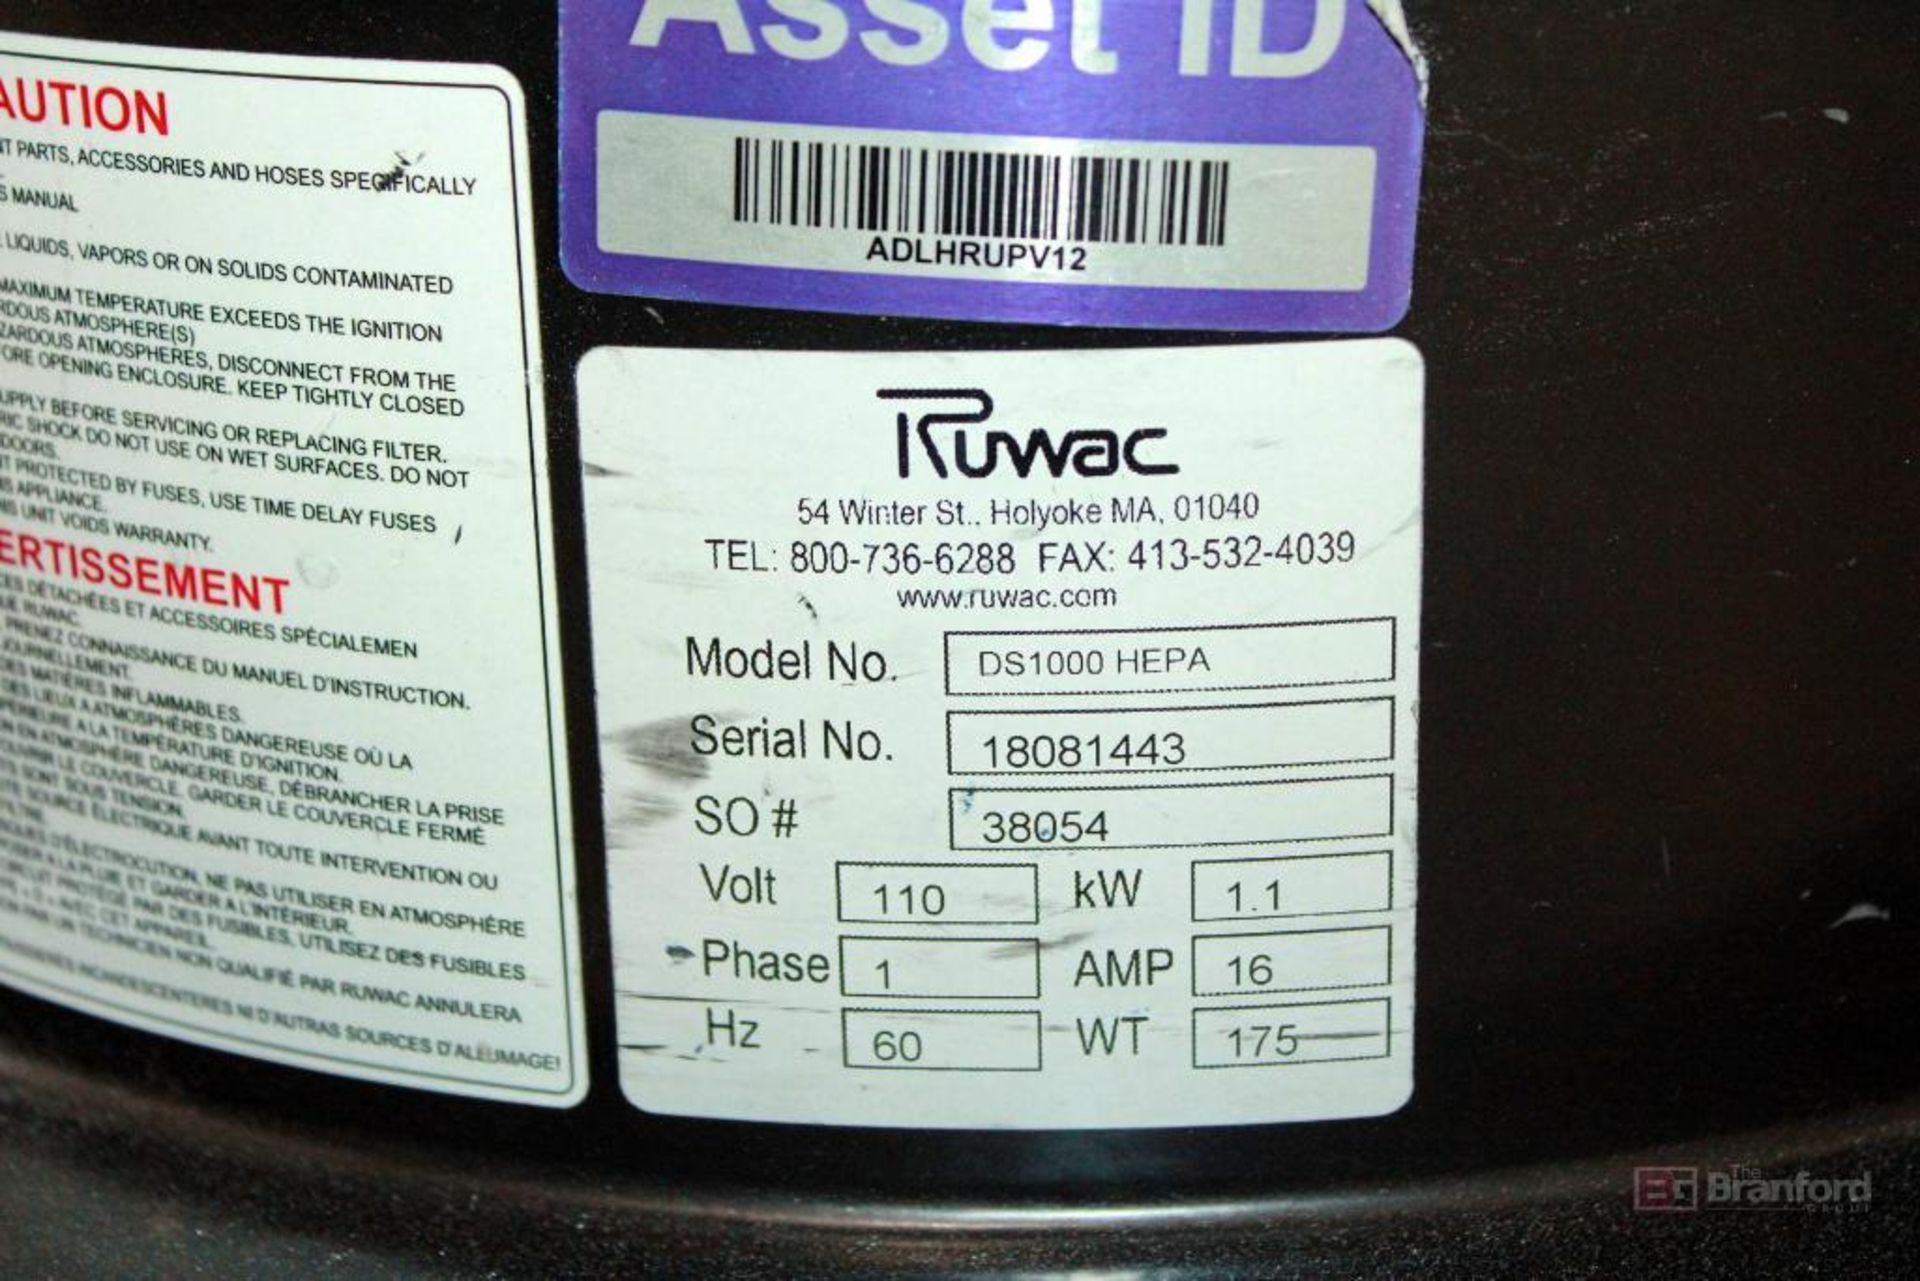 Ruwac WorkHorse Vacuum DS1000 HEPA - Image 2 of 2